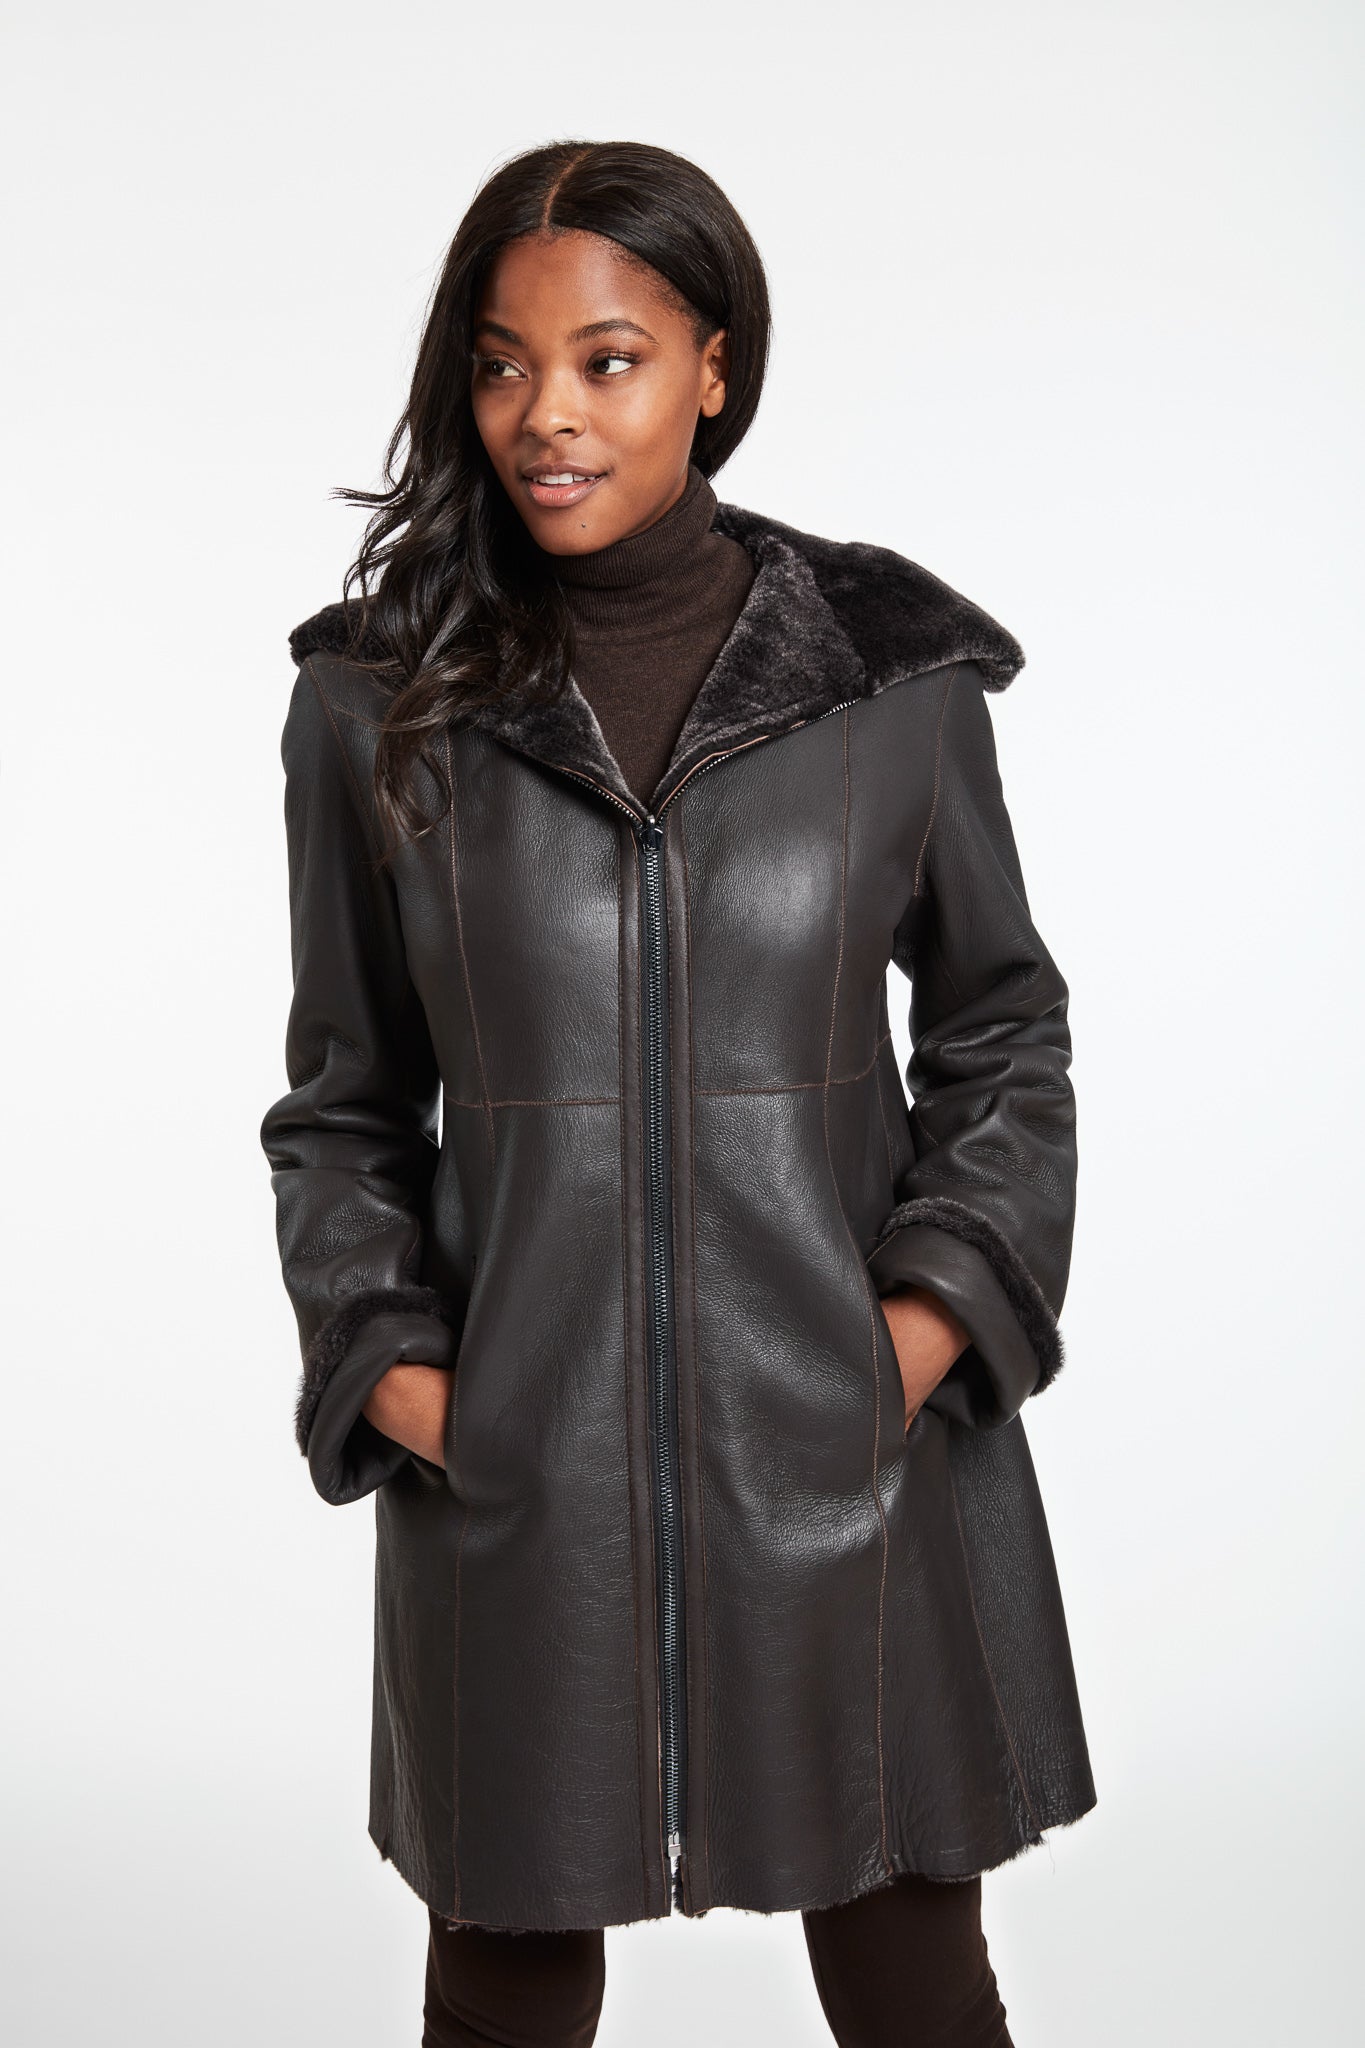 Fitted Zip Shearling Coat, Women's Coats